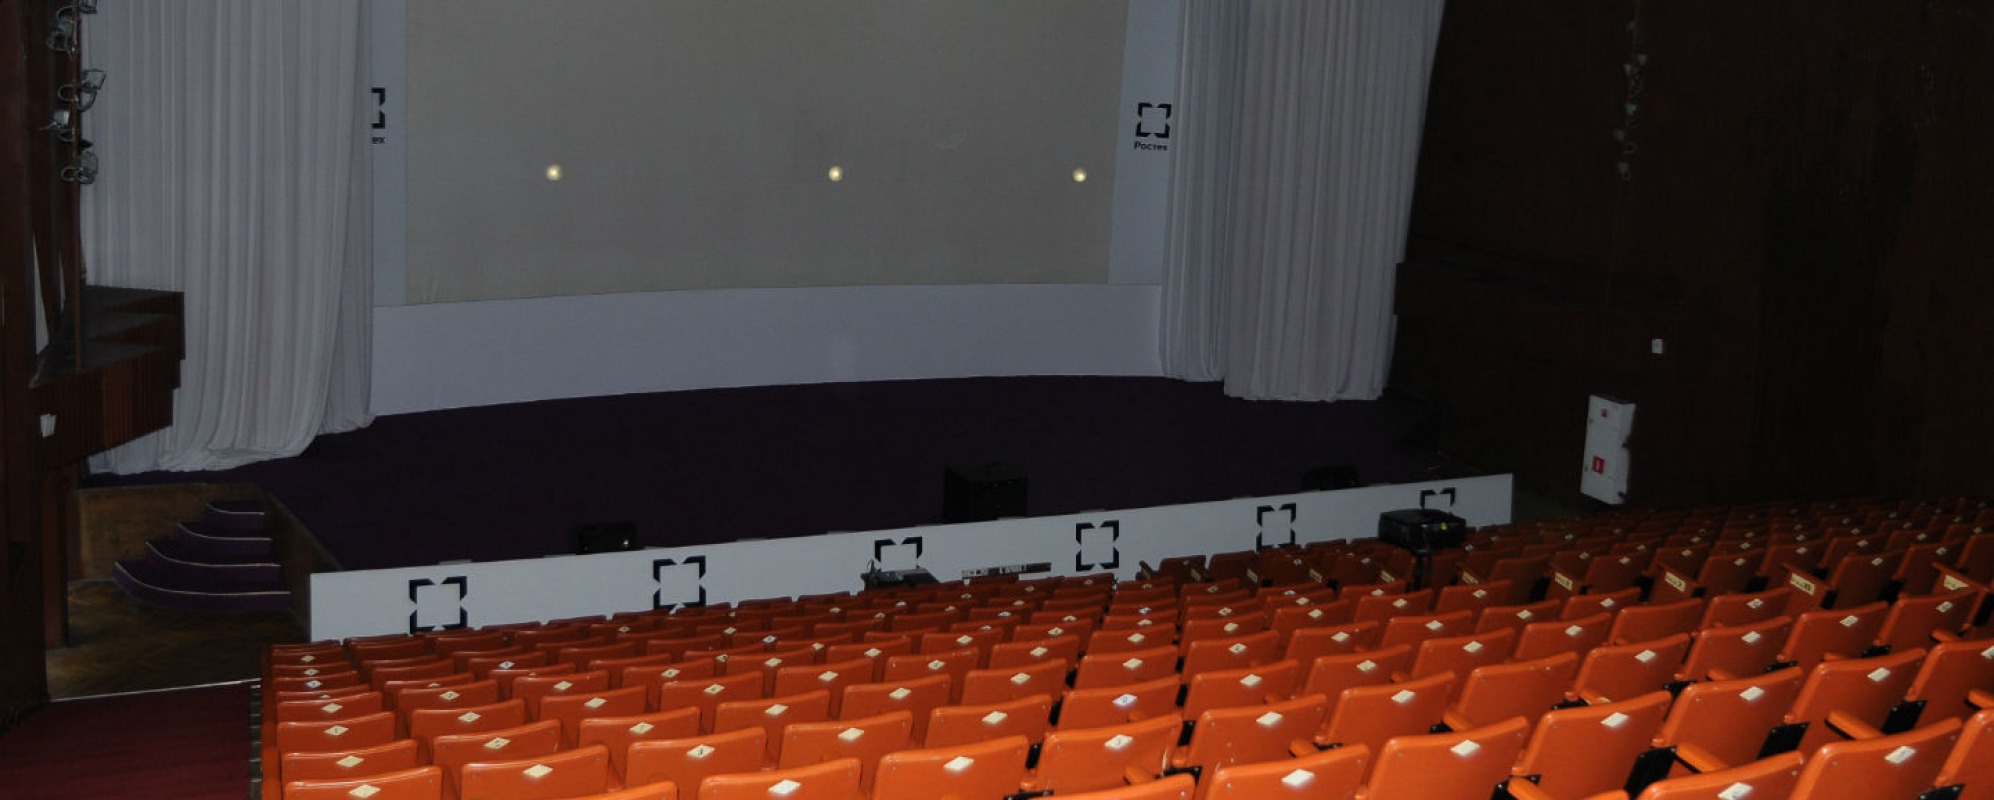 Фотографии концертного зала Киноконцертный зал Зеленая роща